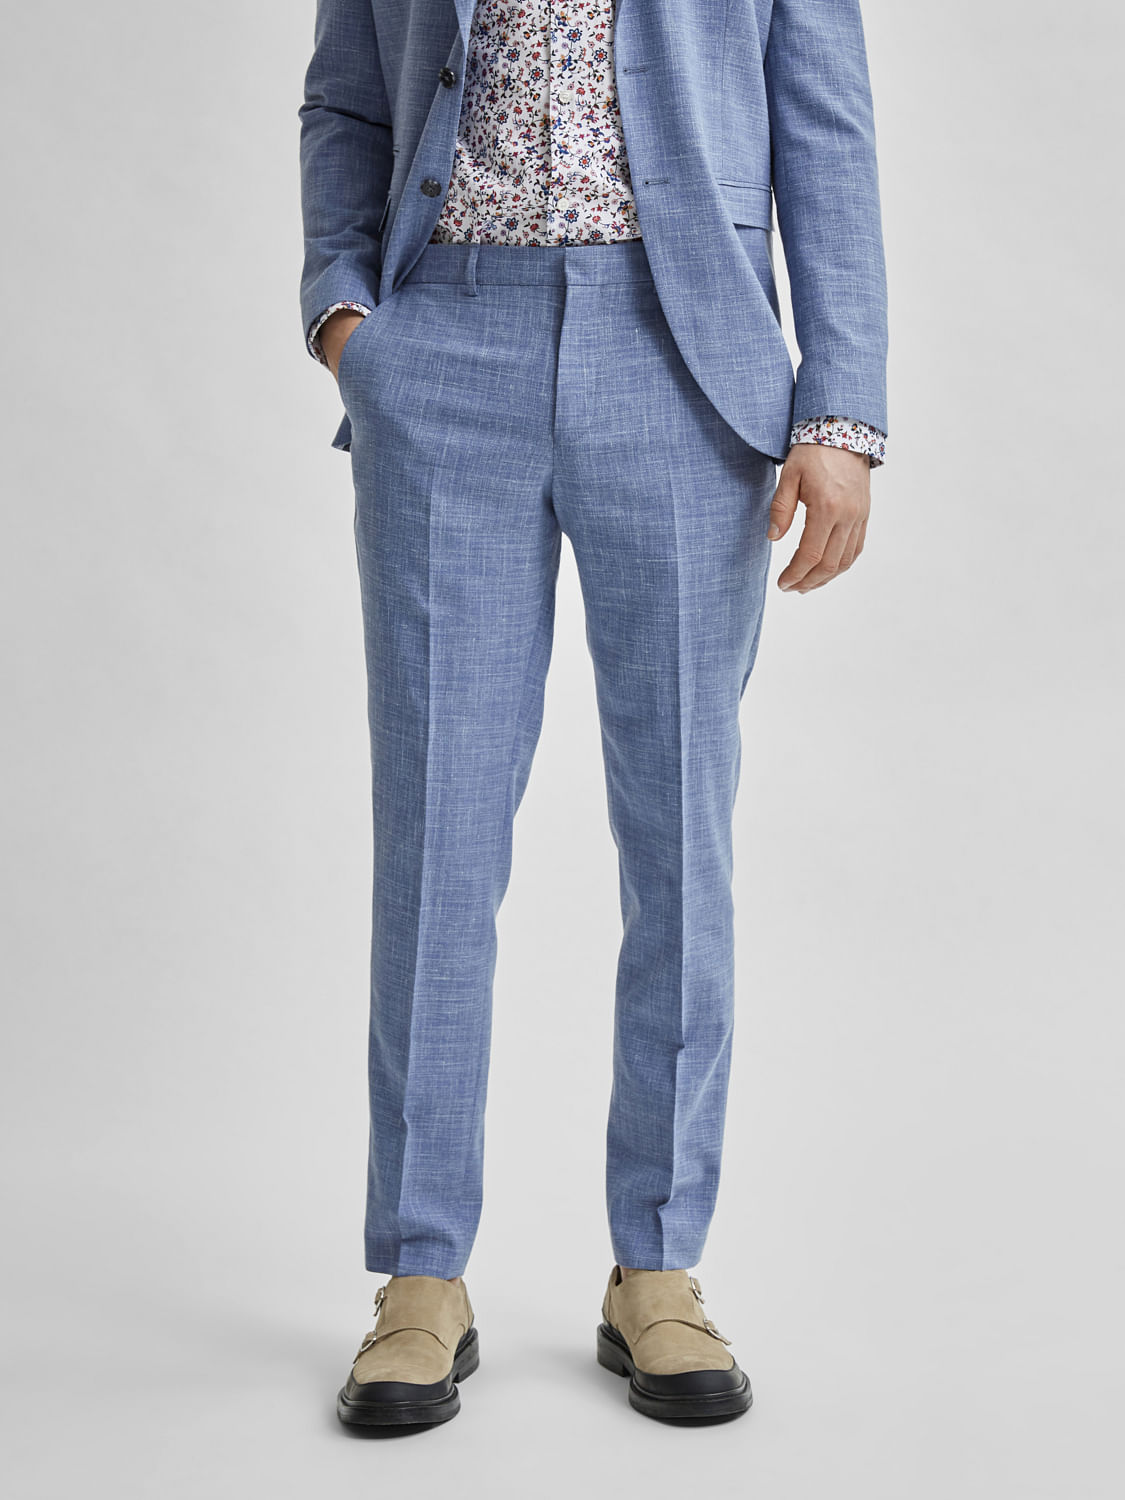 Buy Van Heusen Mens Slim Fit Formal Trousers VHTFBSLPS94216Grey30W x L  at Amazonin